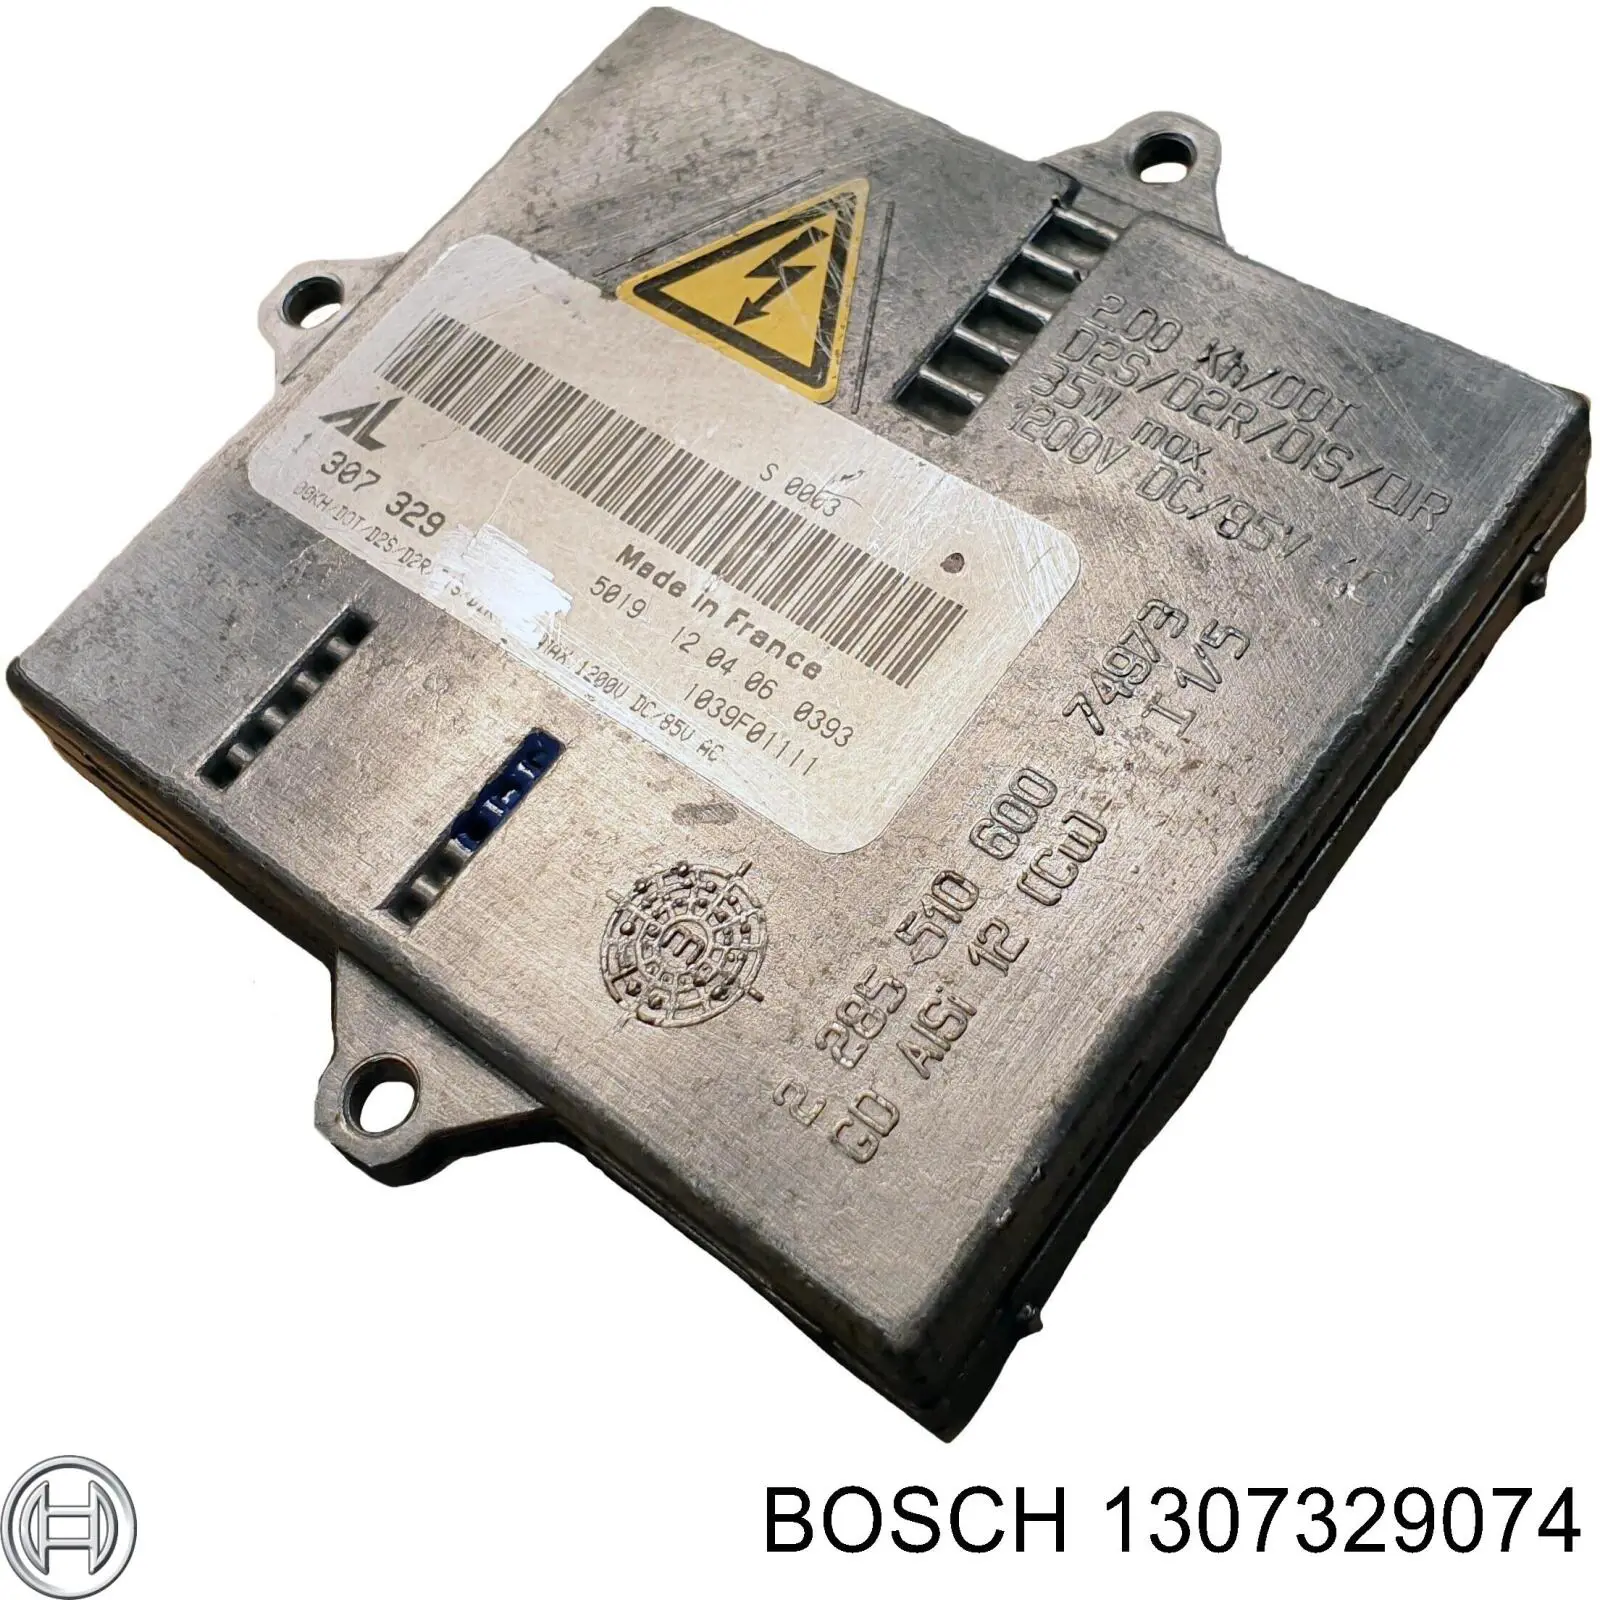 1307329074 Bosch xenon, unidad control